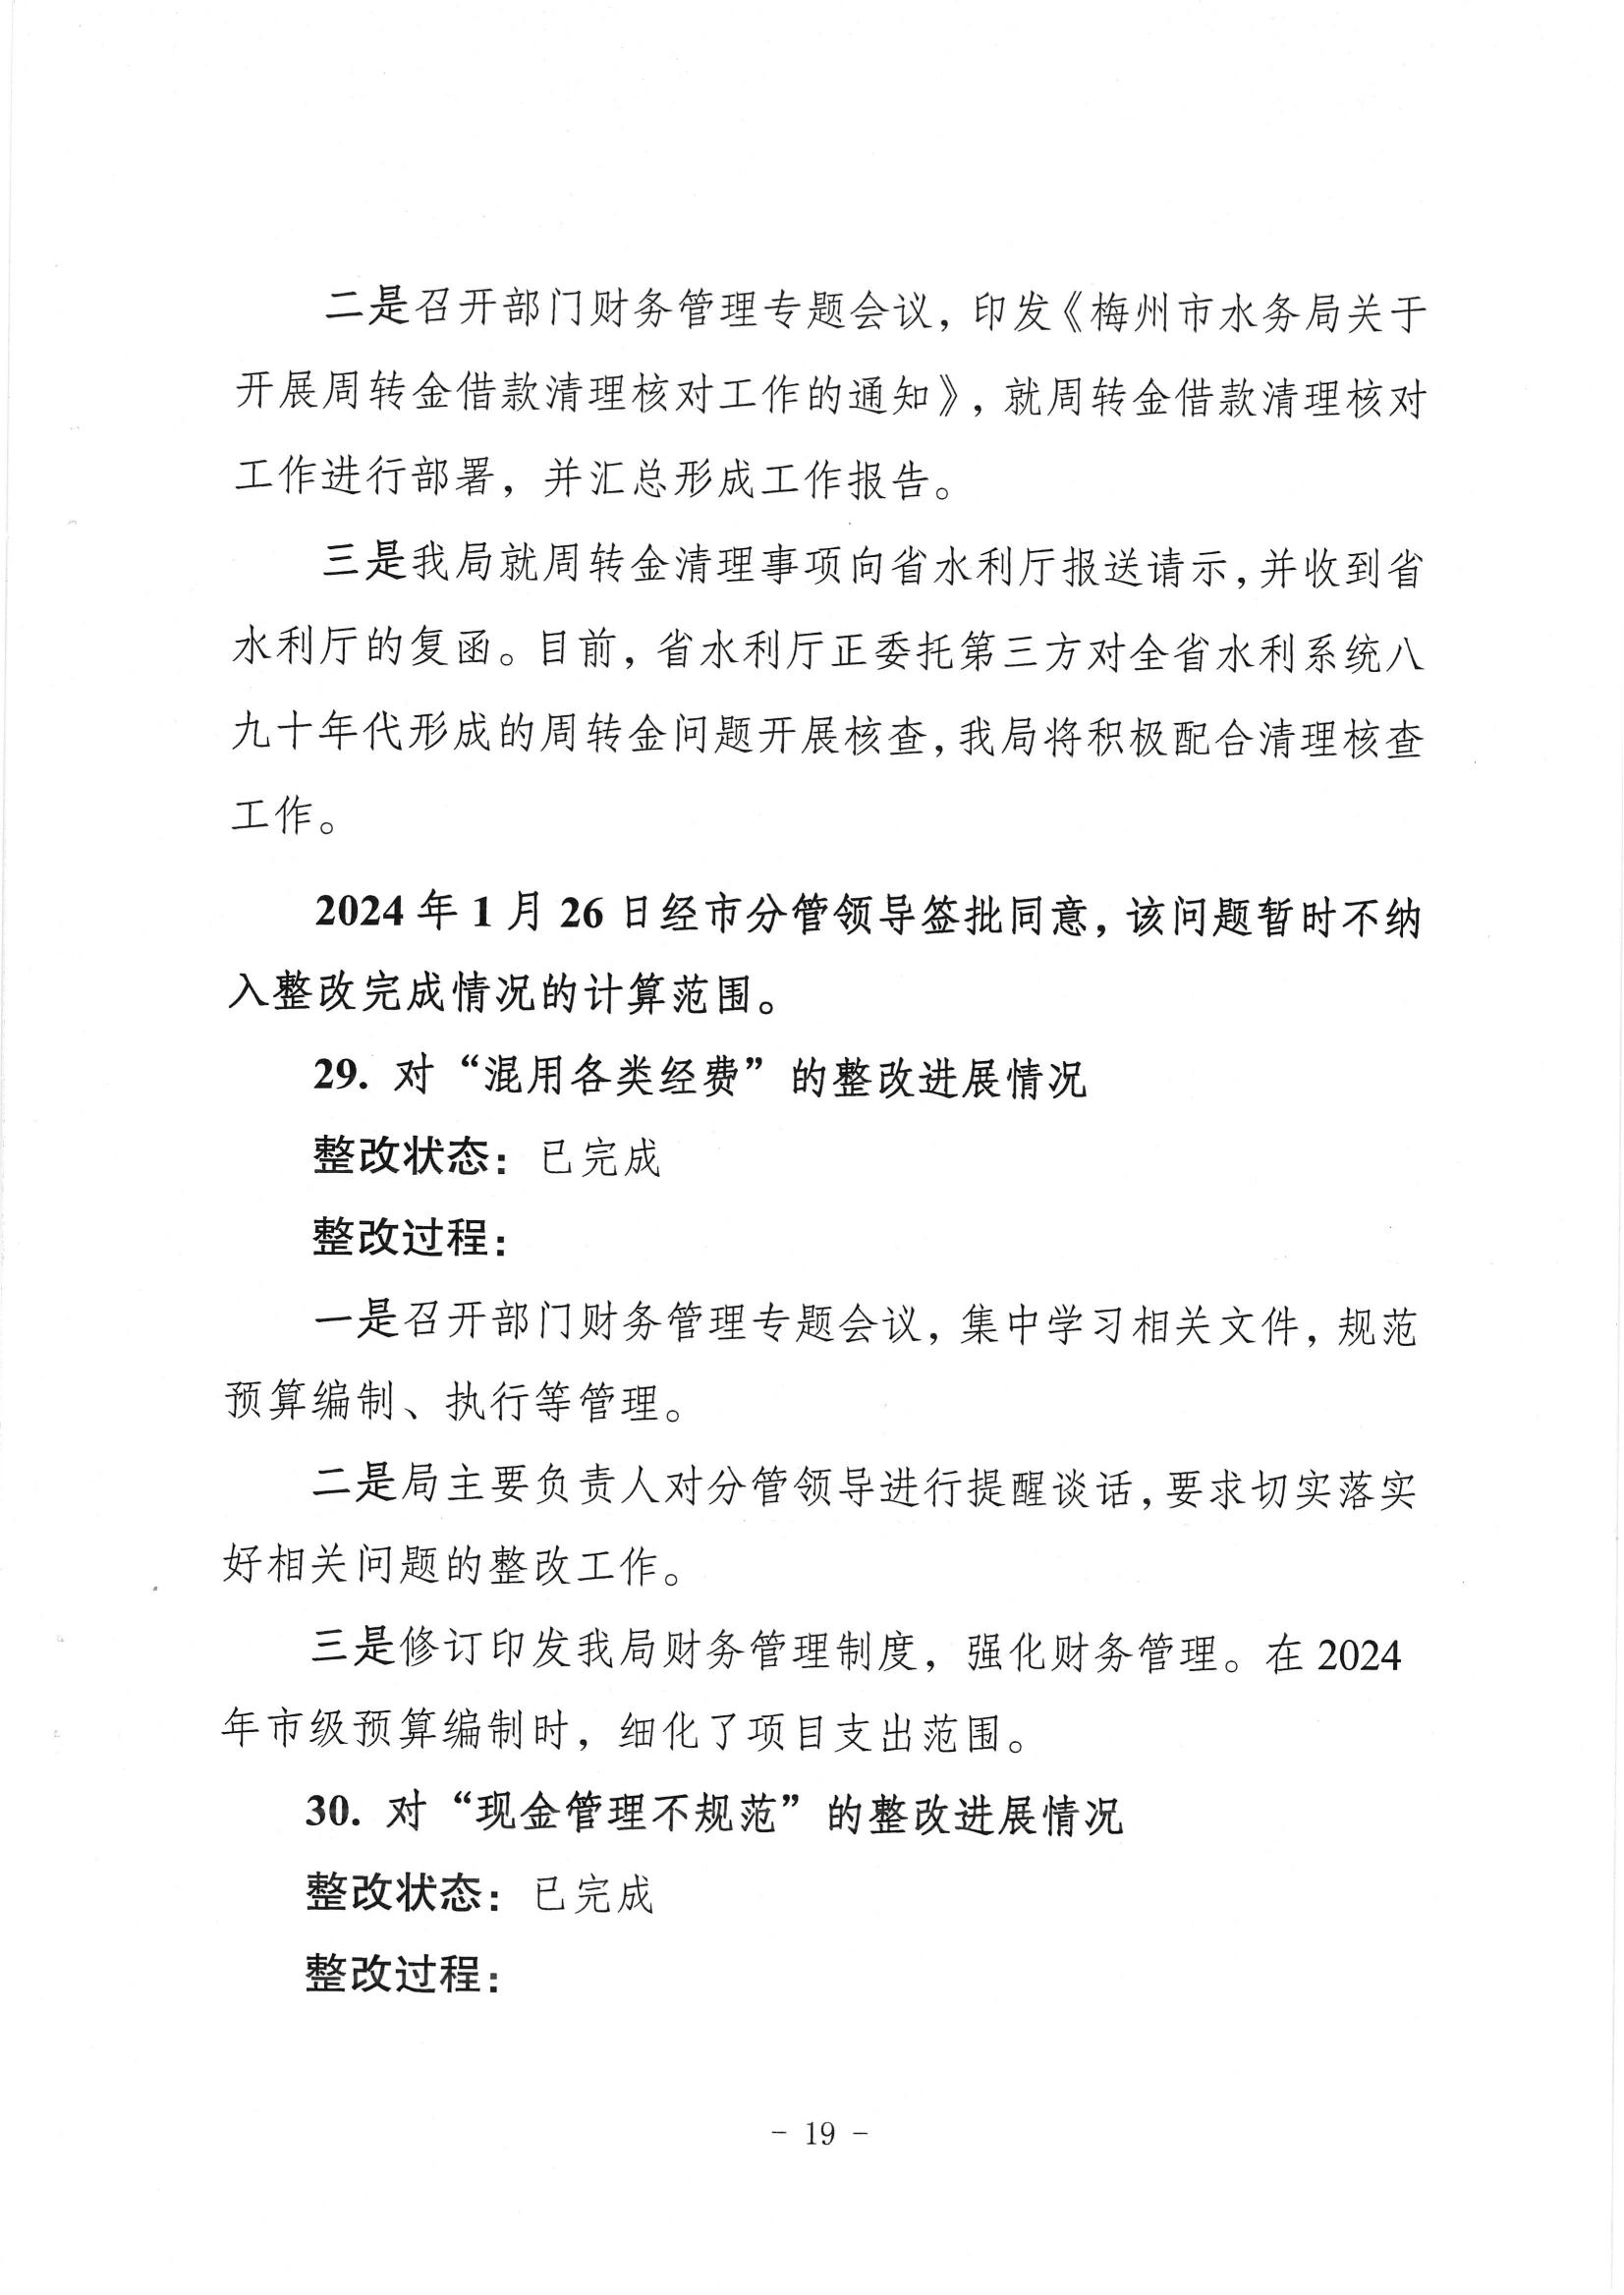 中共梅州市水务局党组关于落实八届市委第三轮巡察反馈意见的整改进展情况报告_18.jpg